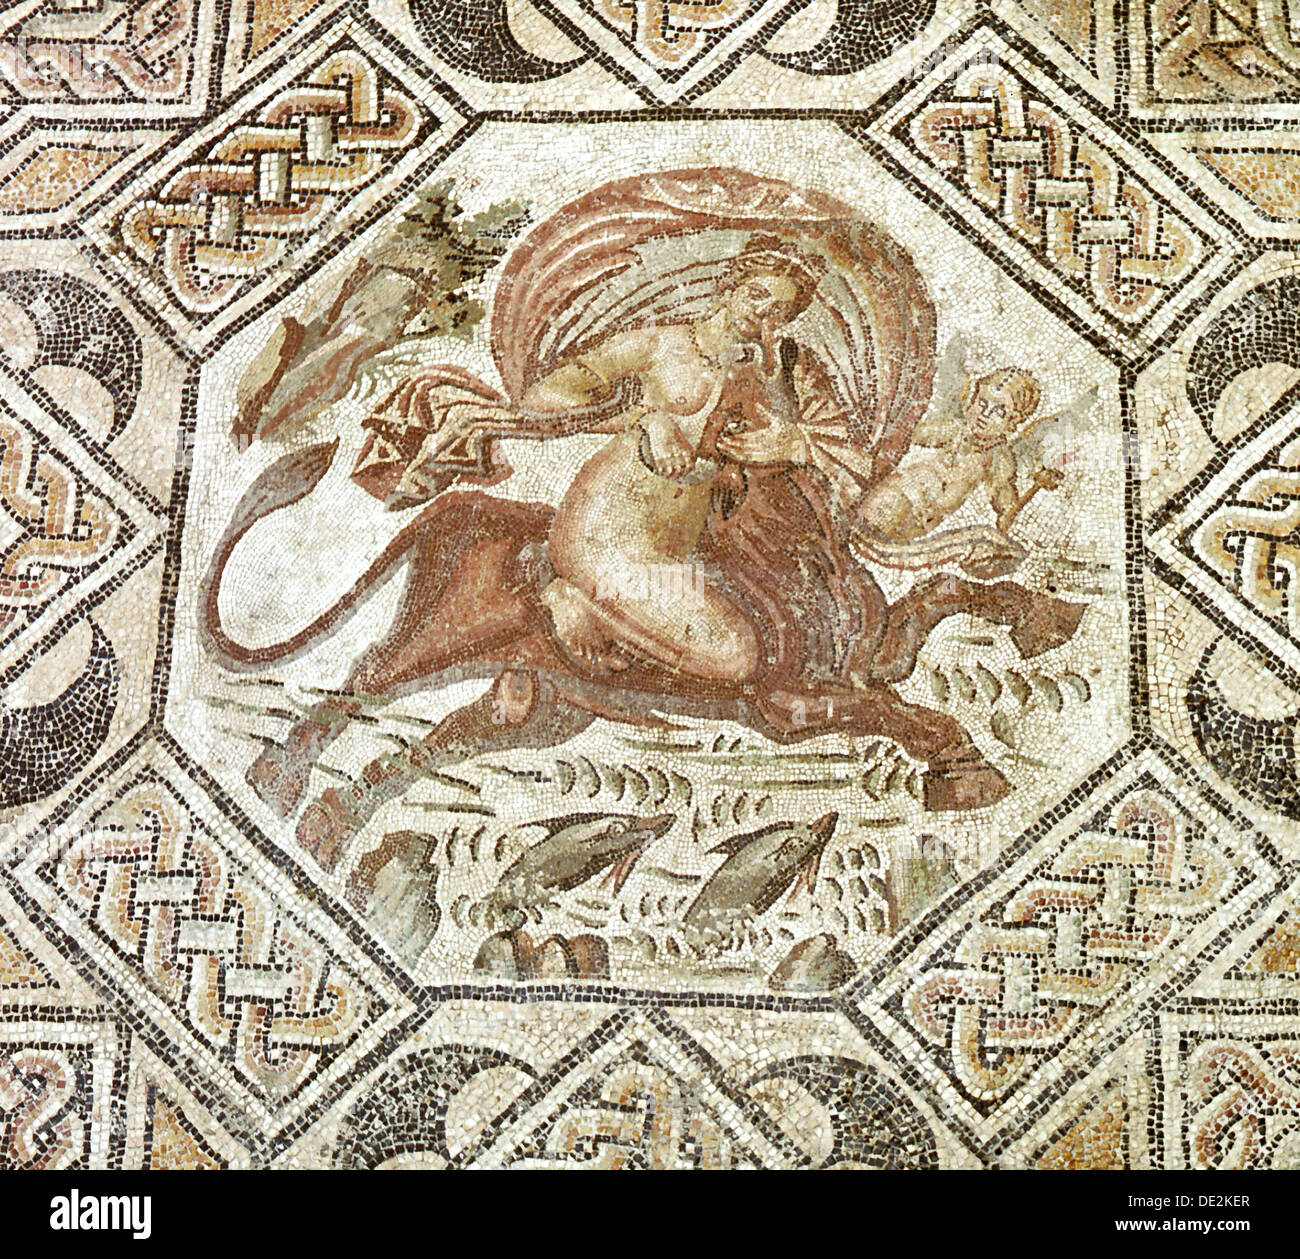 Mosaico que representa el mito del "Rapto de Europa". Foto de stock